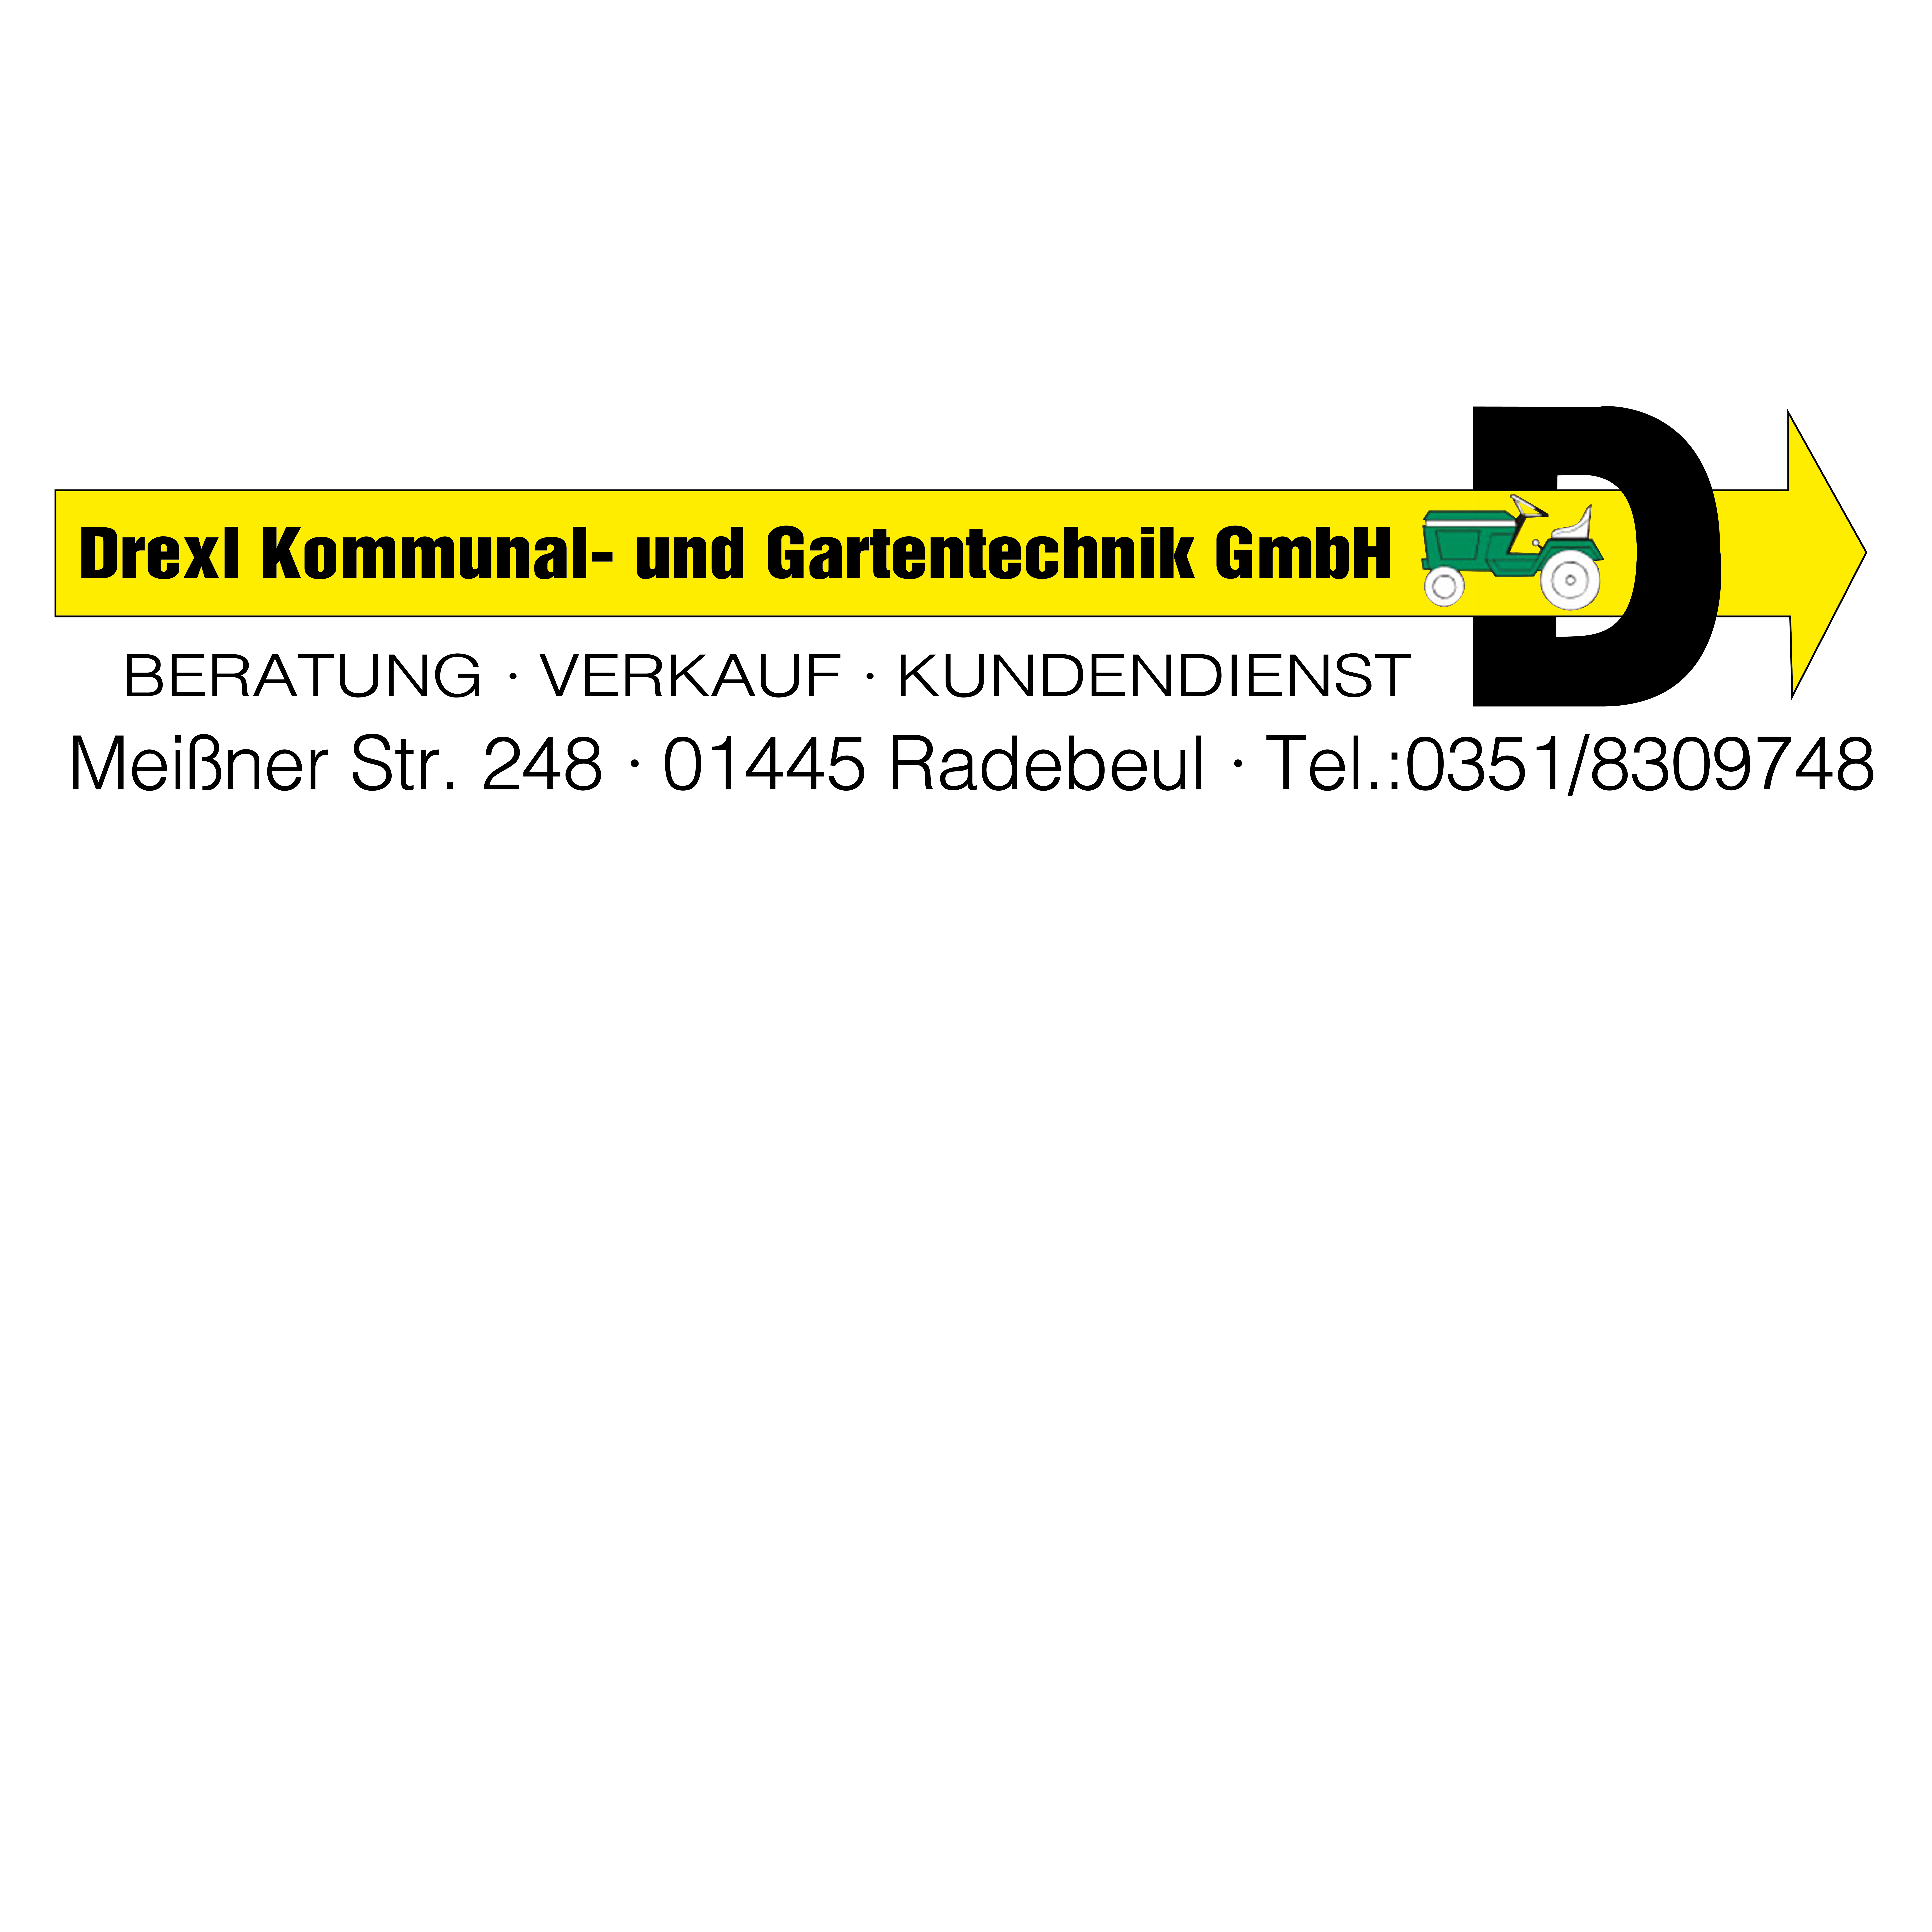 Drexl Kommunal- und Gartentechnik GmbH  